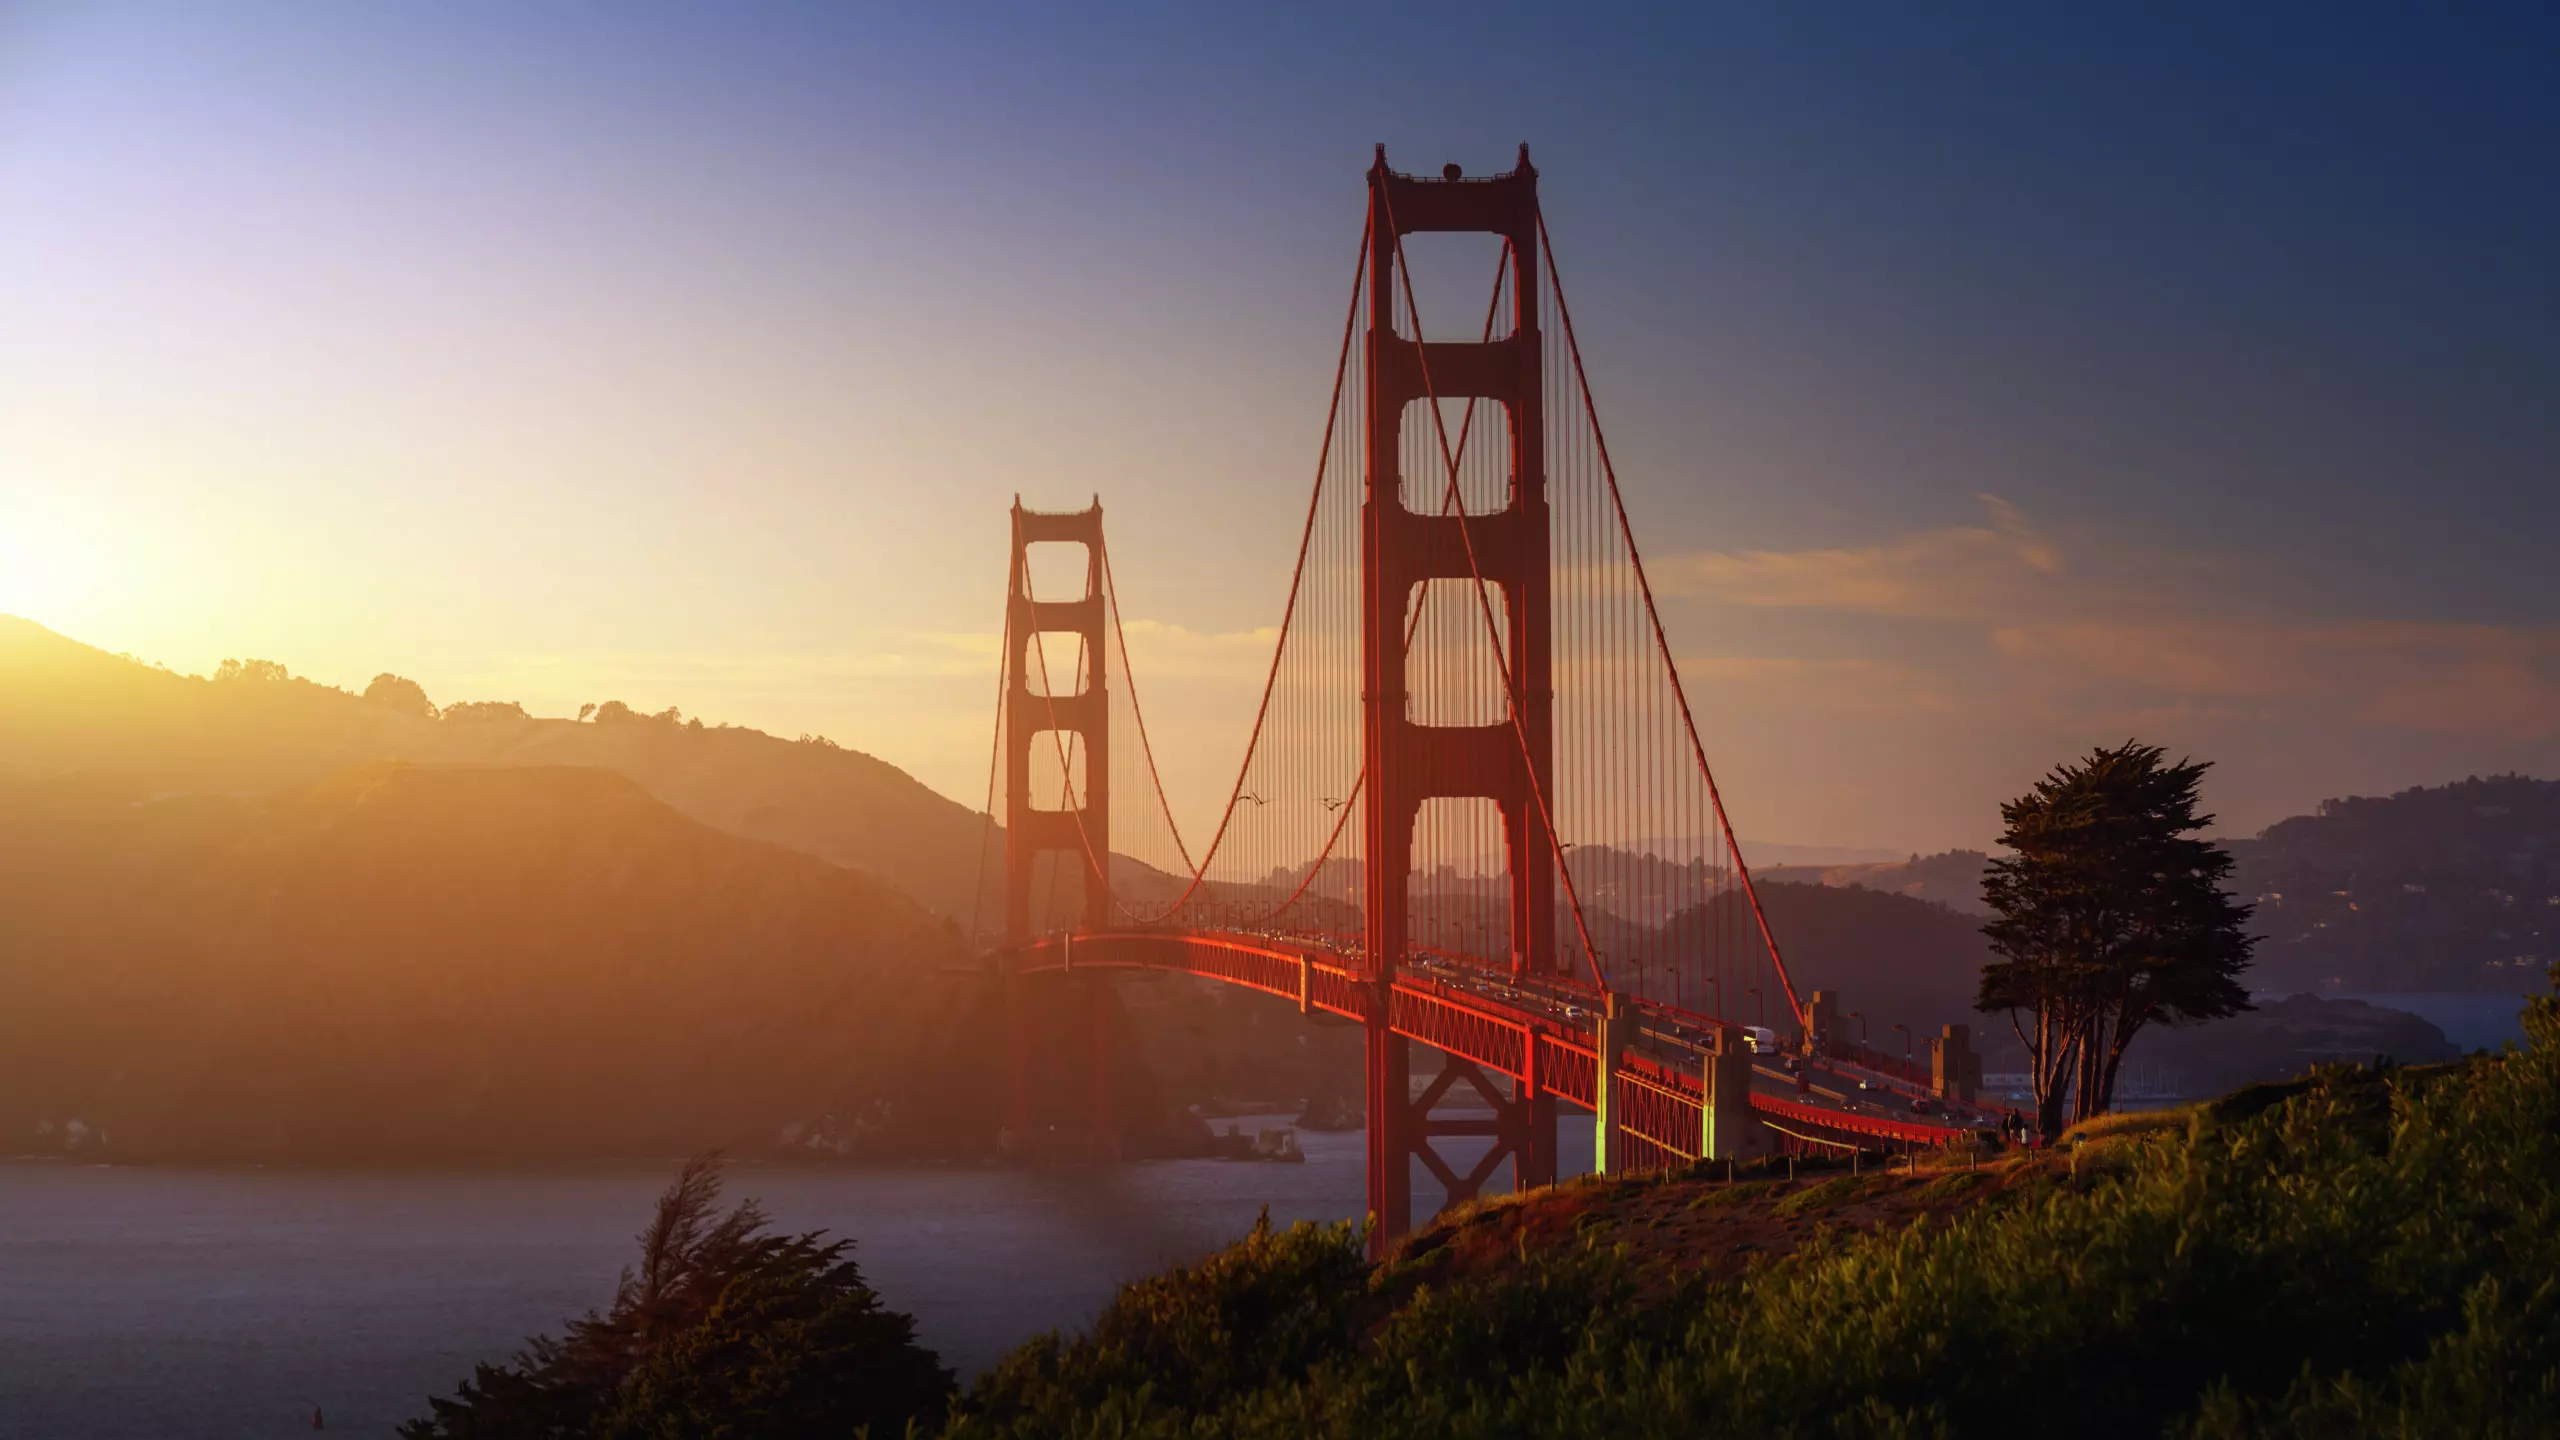 Wandbild (5848) South Golden Gate by Juan de Pablo, 1x.com präsentiert: Architektur,Skylines,Sehenswürdigkeiten,Brücke